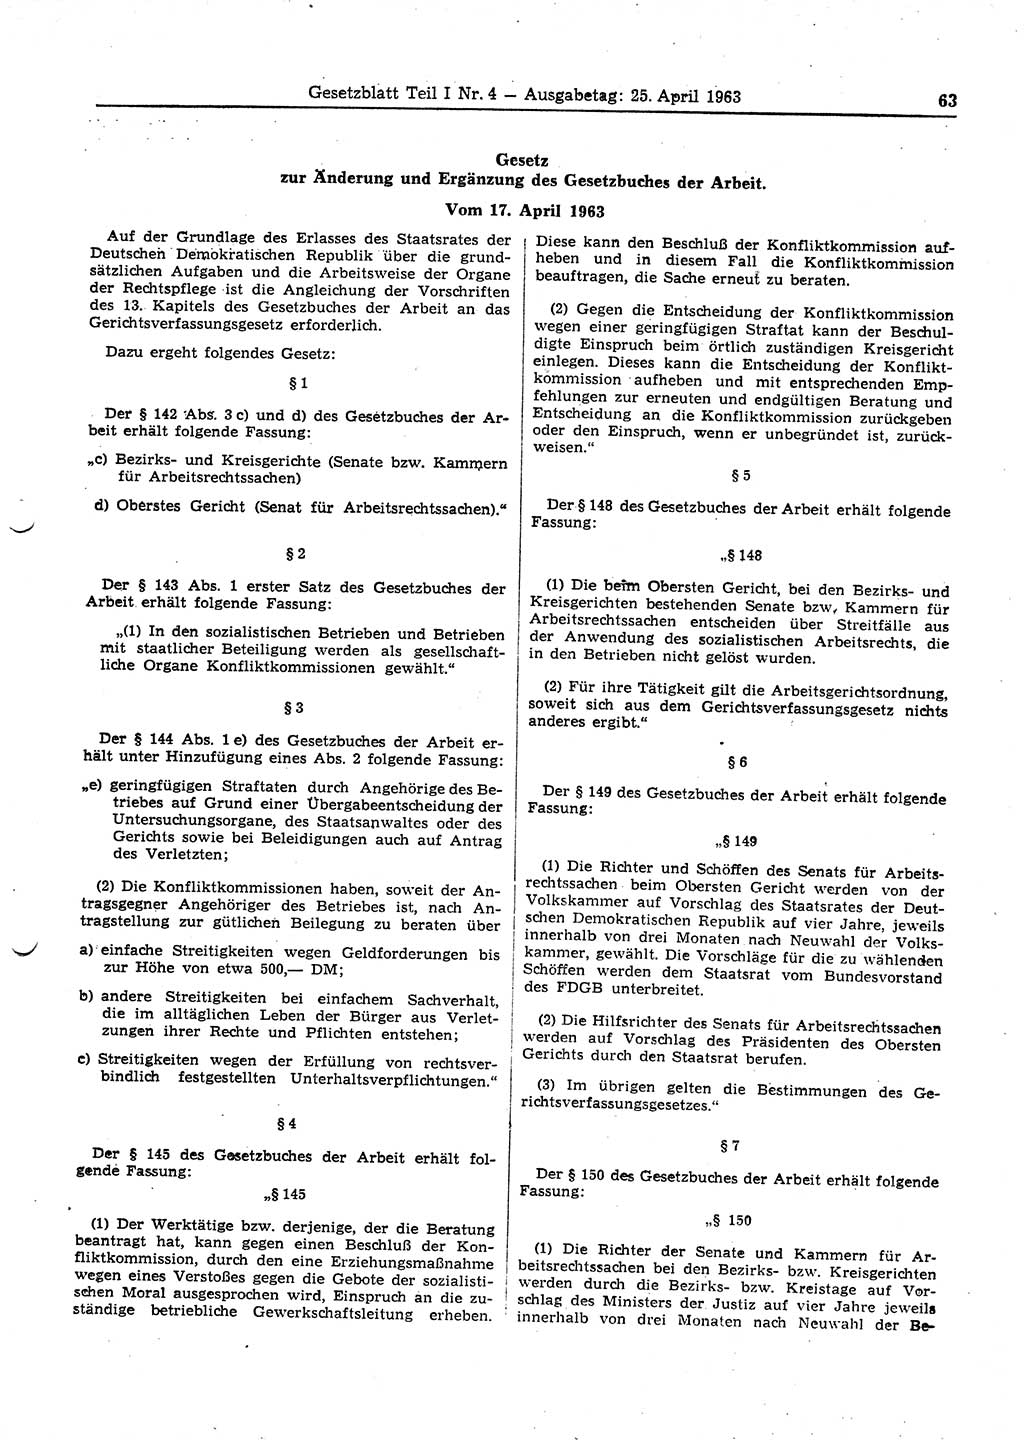 Gesetzblatt (GBl.) der Deutschen Demokratischen Republik (DDR) Teil Ⅰ 1963, Seite 63 (GBl. DDR Ⅰ 1963, S. 63)